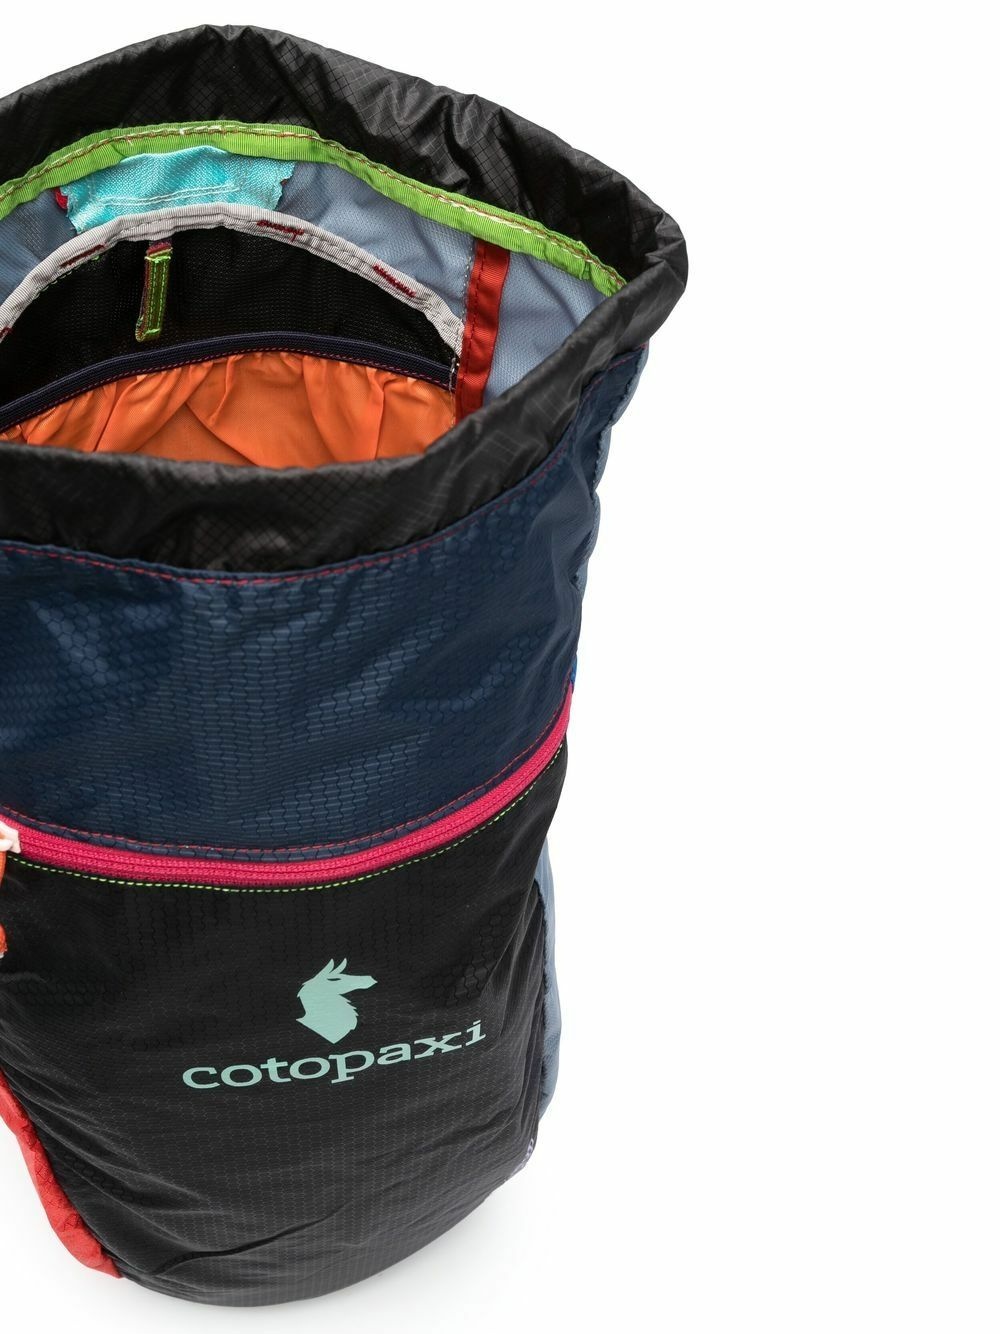 COTOPAXI - Luzon 18l Backpack Cotopaxi